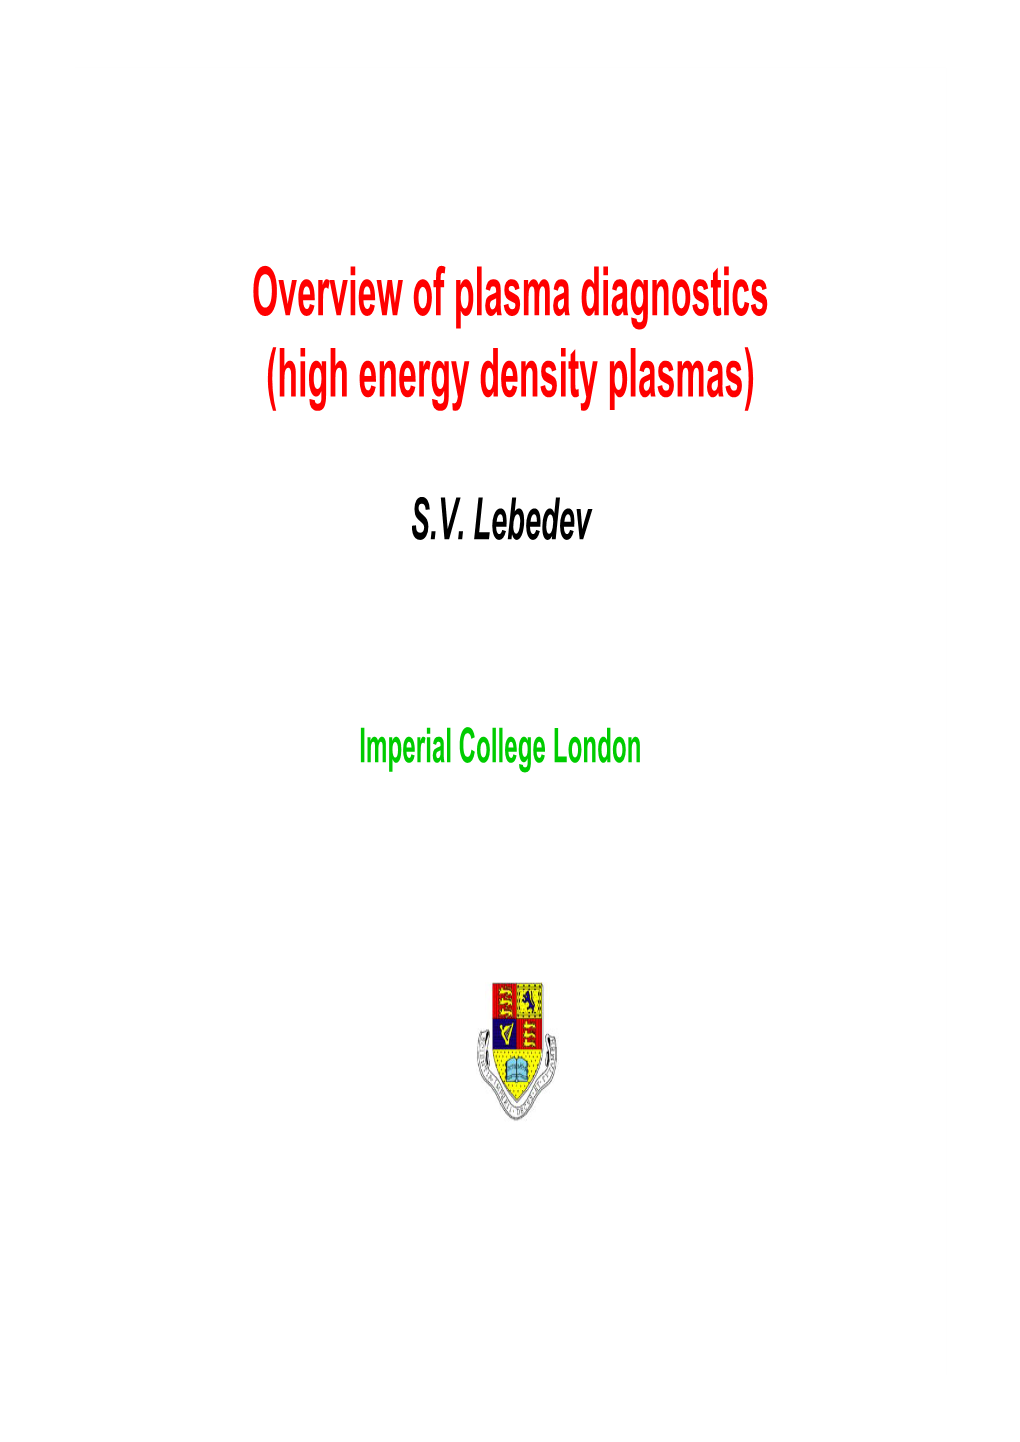 Overview of Plasma Diagnostics (High Energy Density Plasmas)